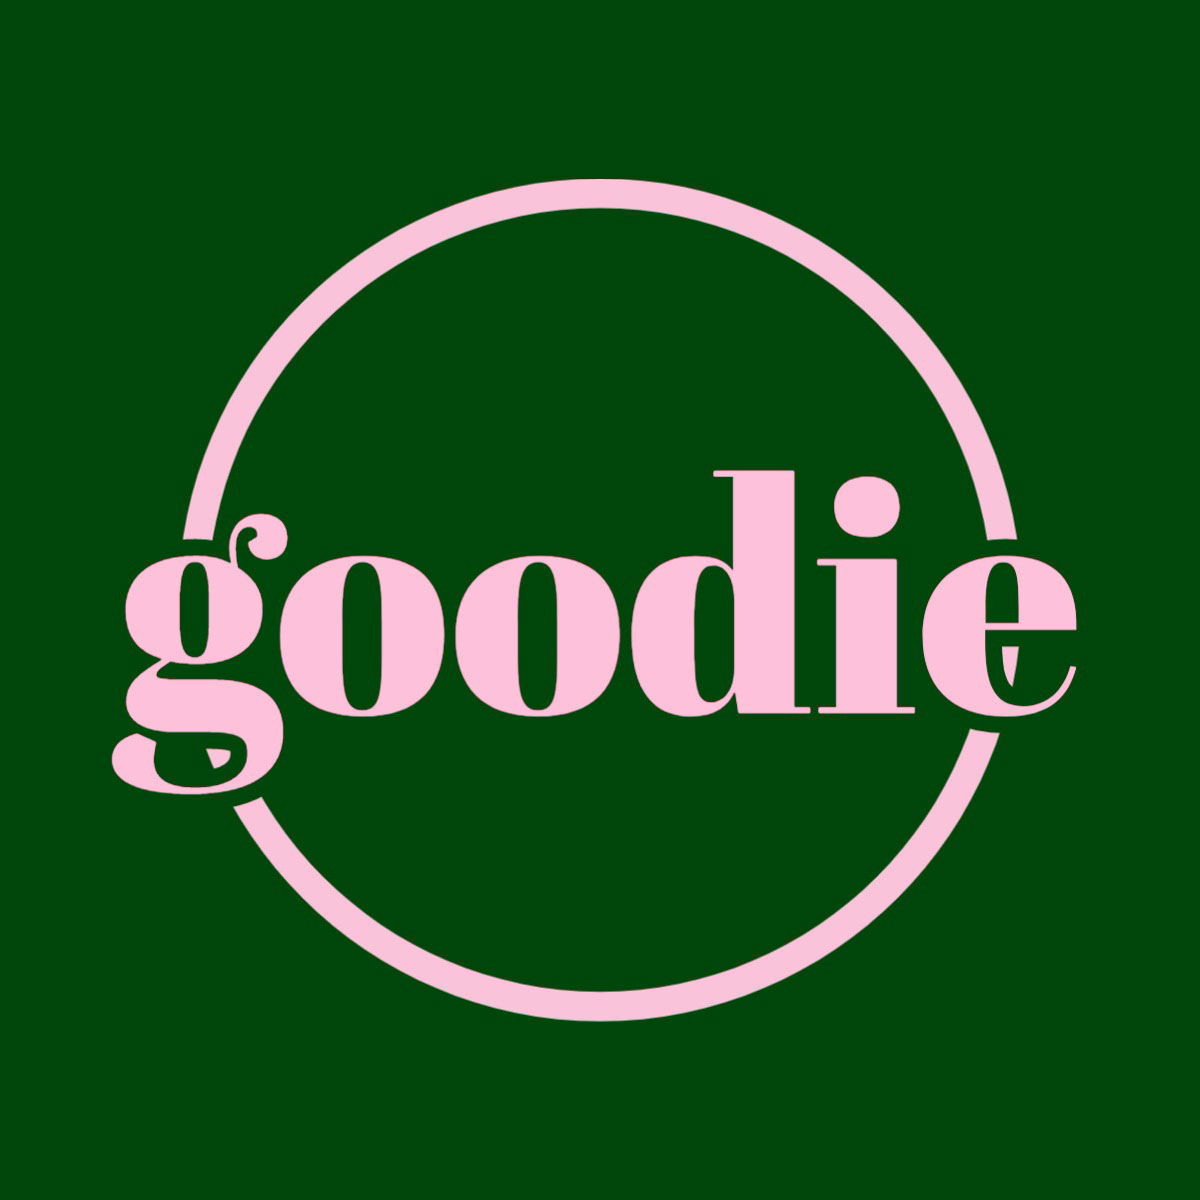 adobe logo creator free download